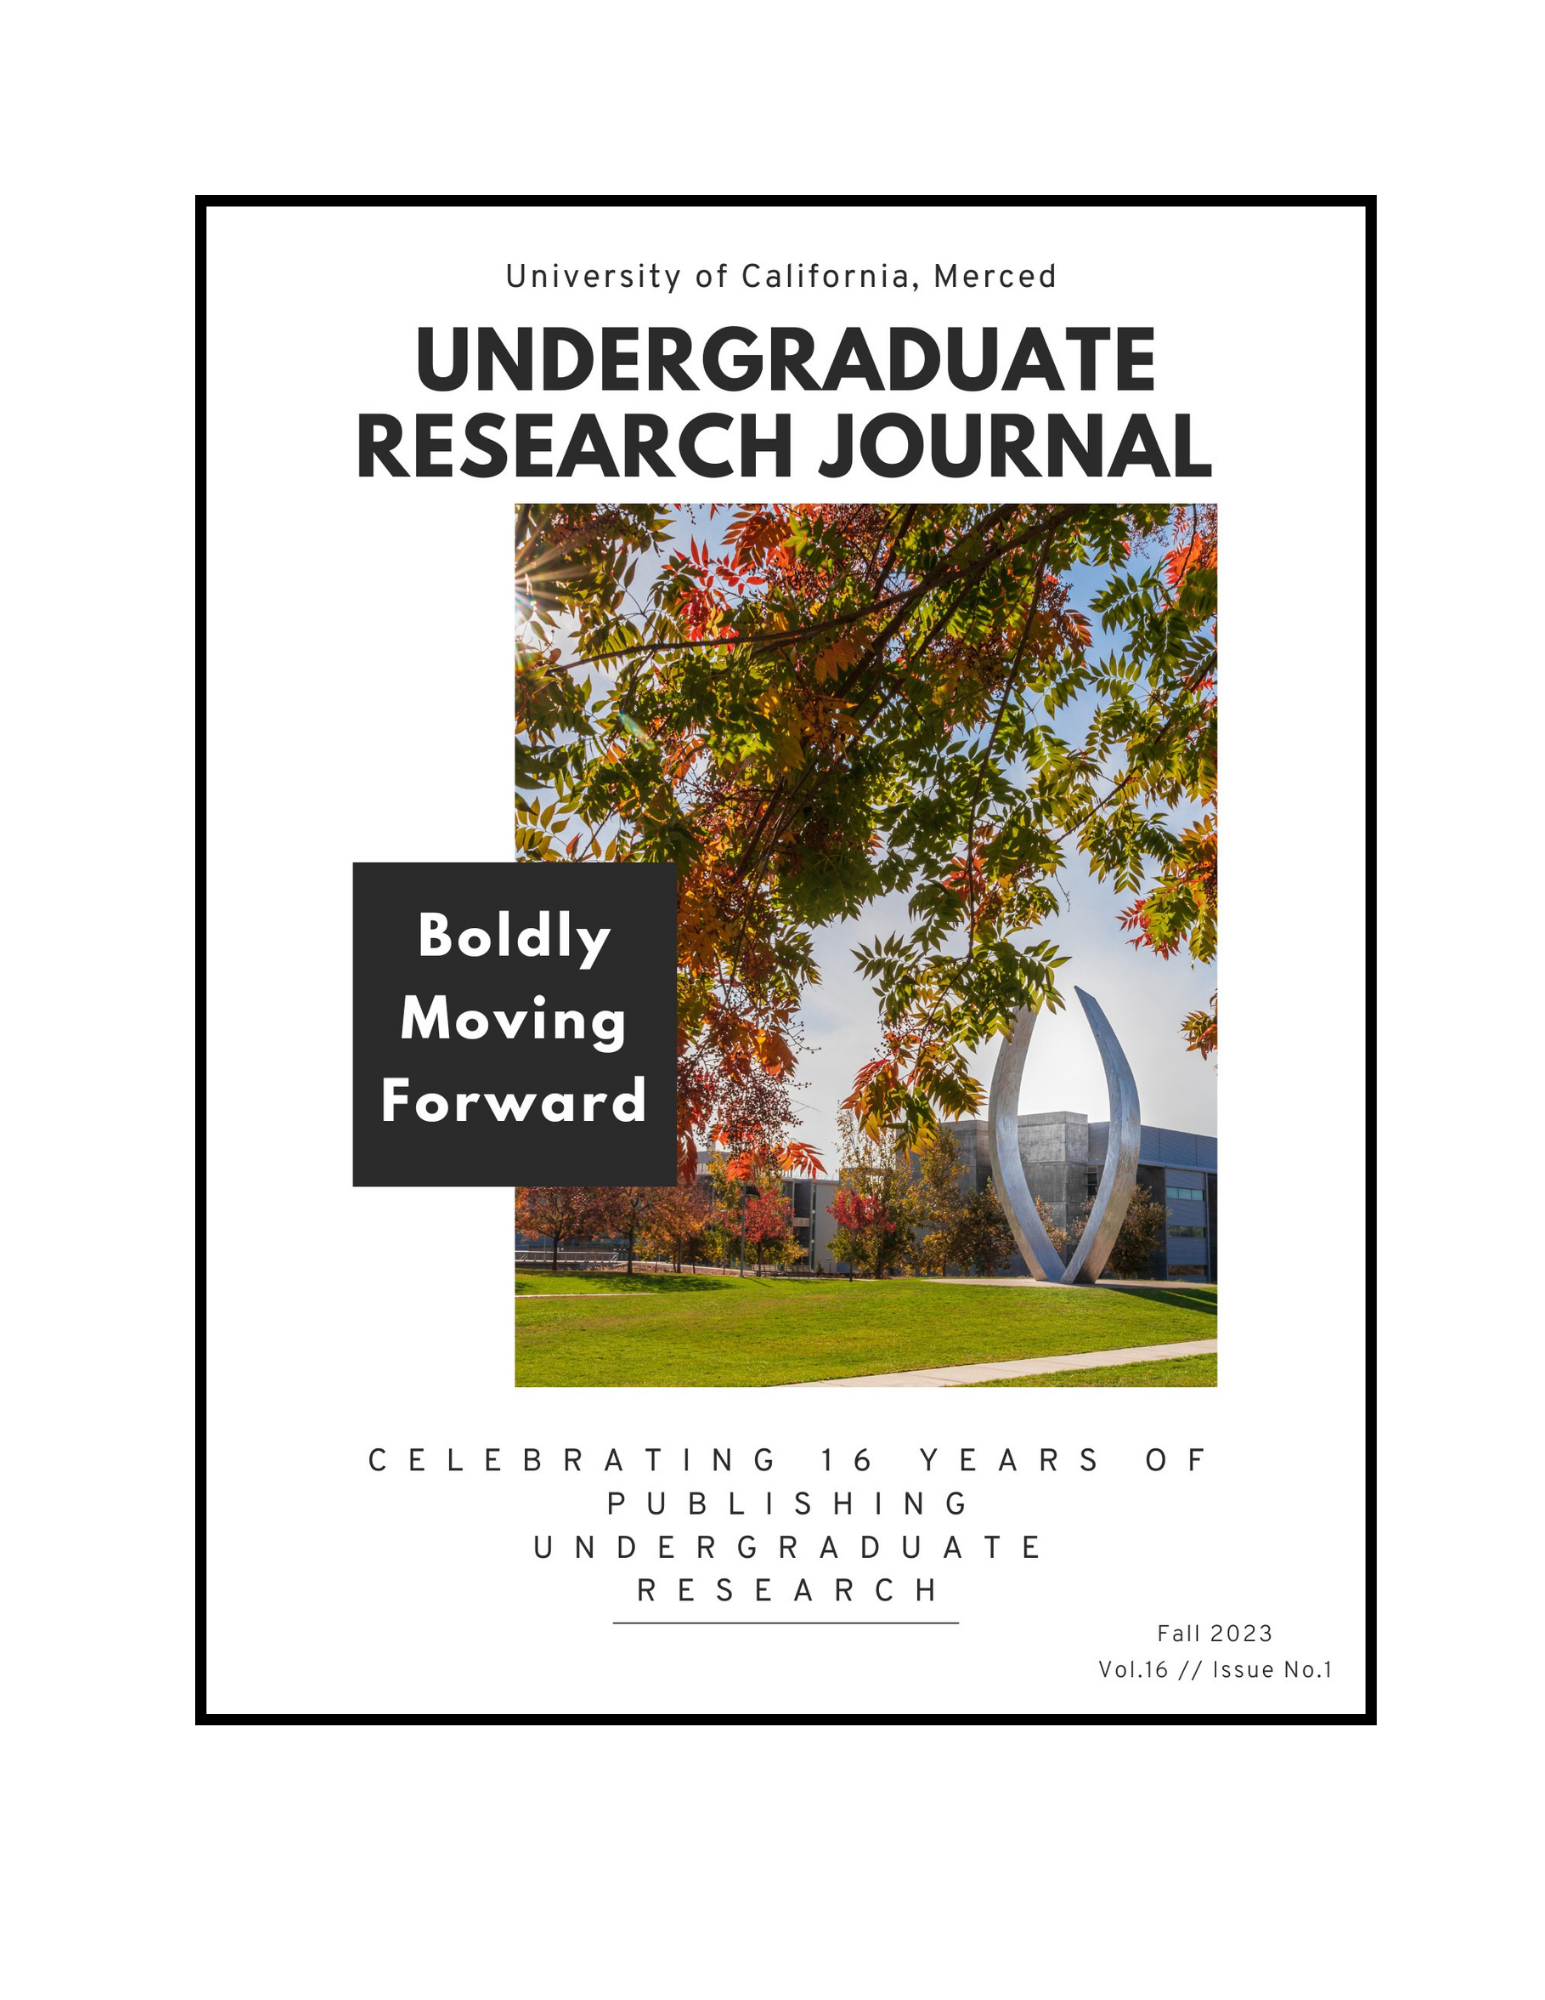 UC Merced Undergraduate Research Journal